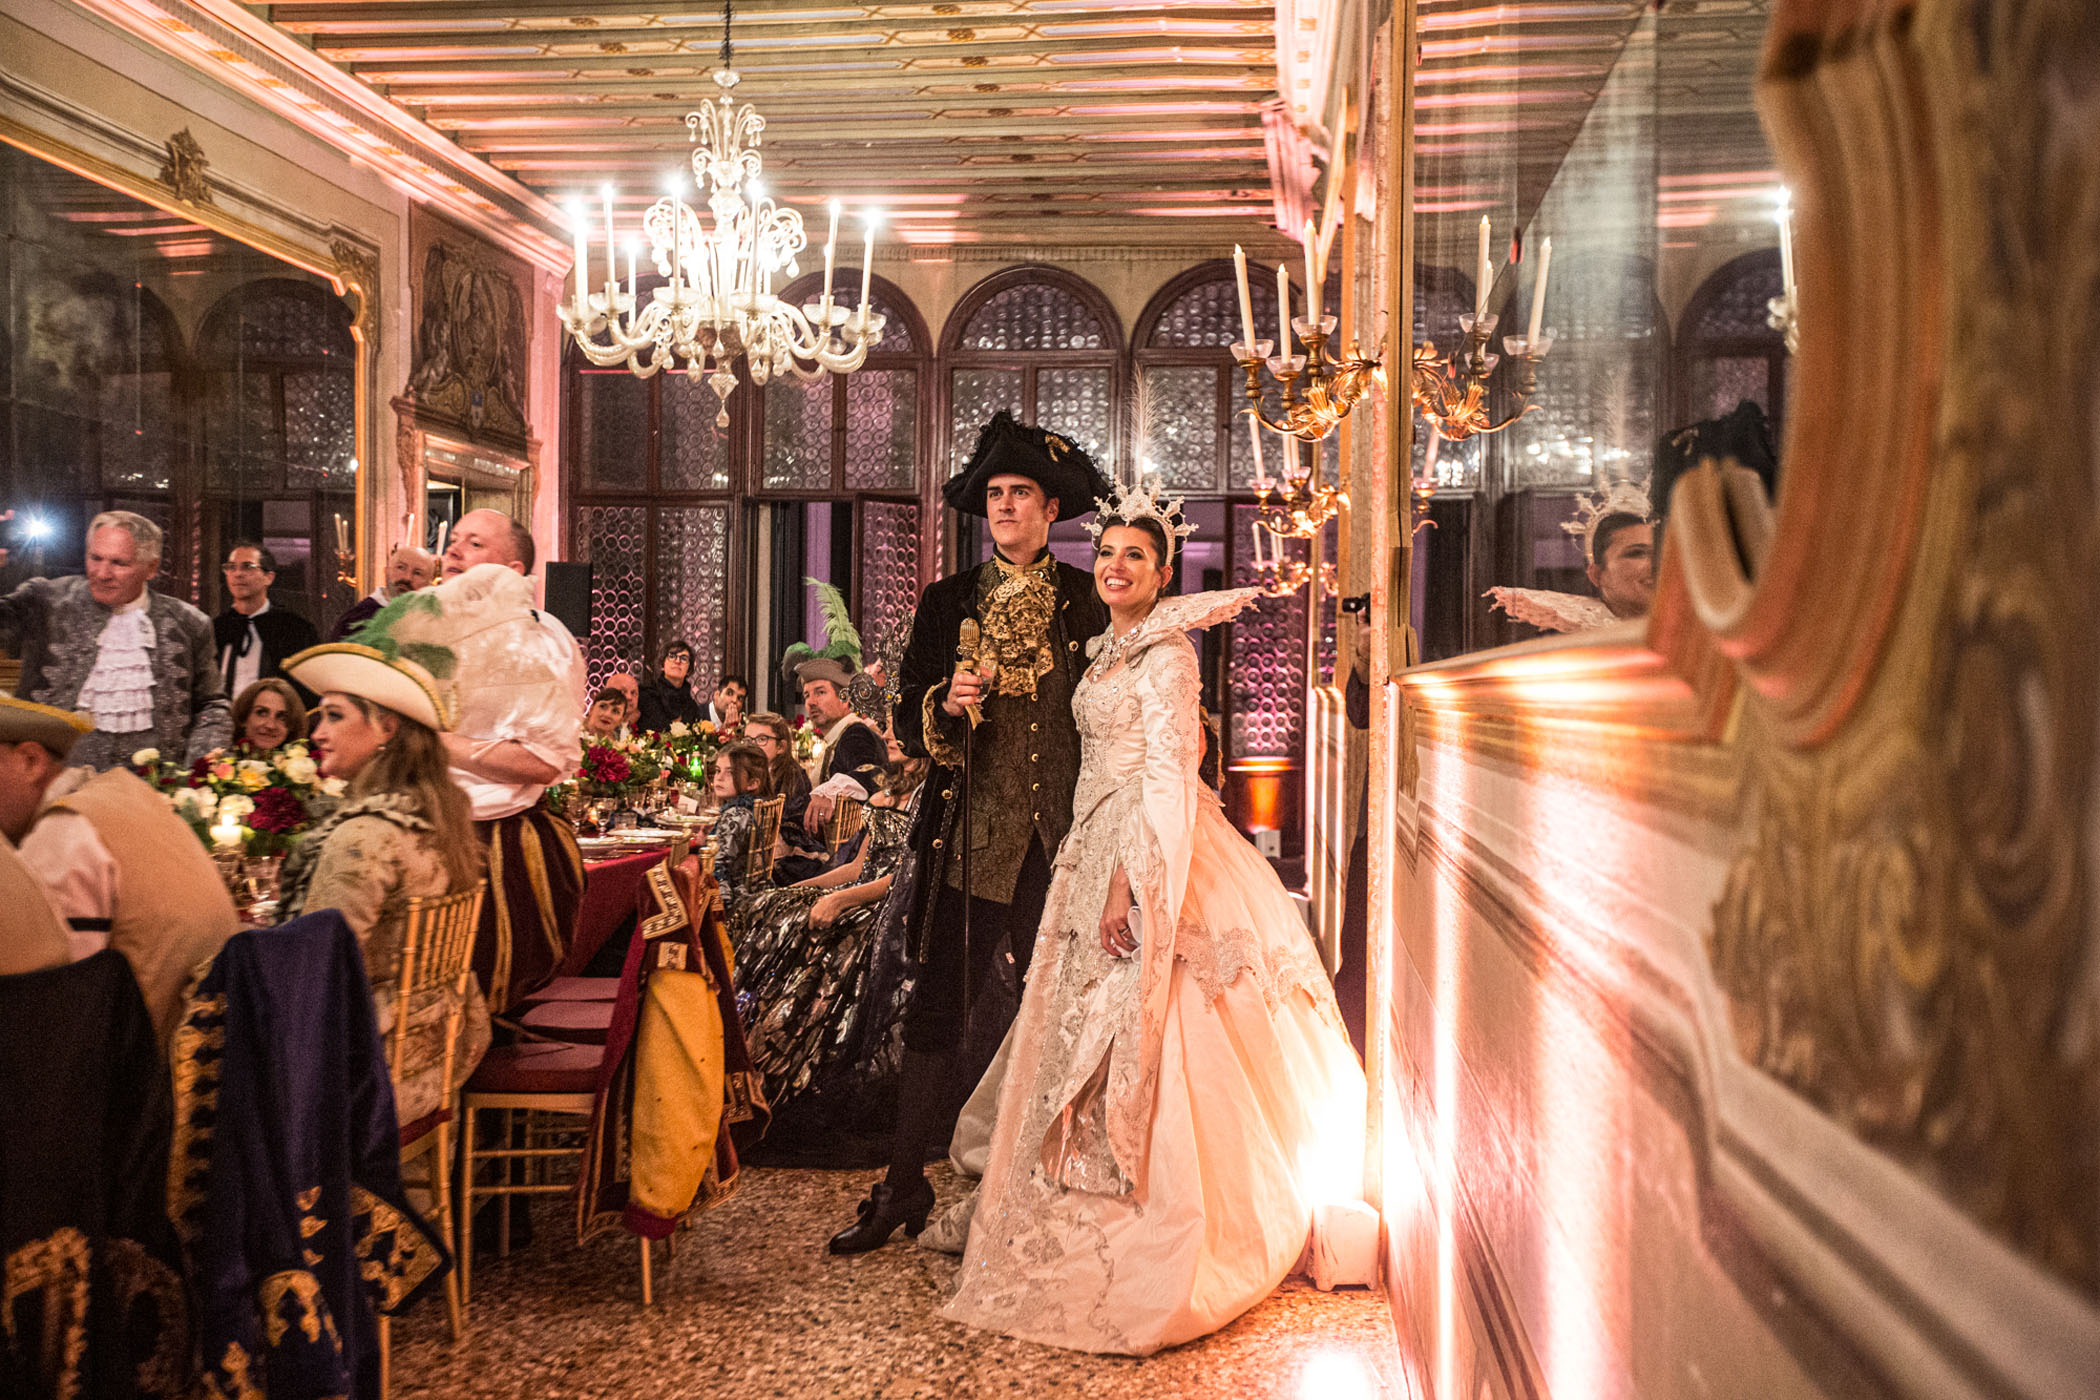 Venetian Carnival Wedding Spectacular